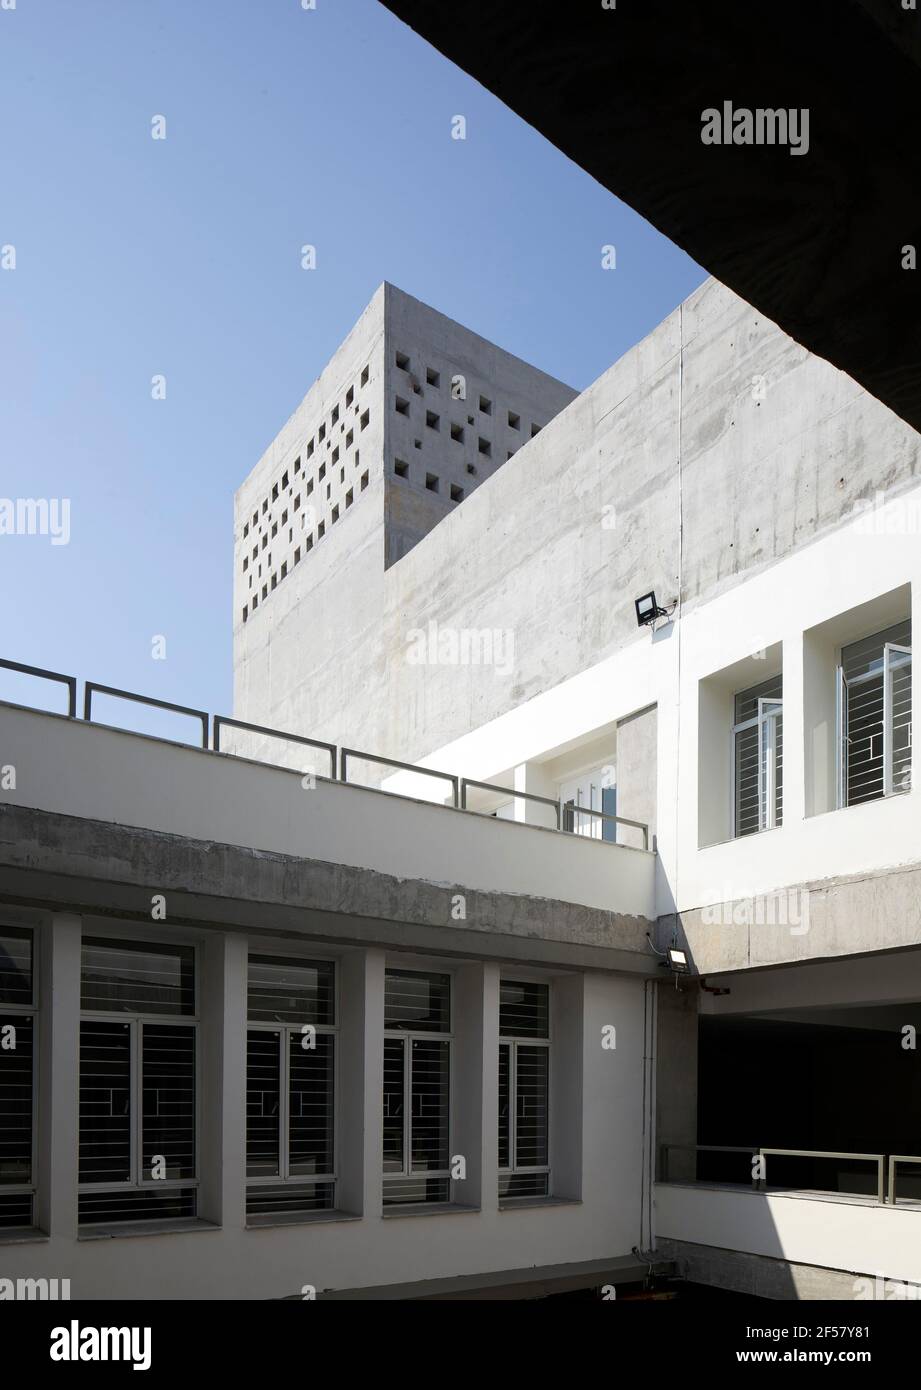 Terrasse ouverte. École de planification et d'architecture de Vijayawada, Vijayawada, Inde. Architecte: Mo-OF/ Mobile Office, 2018. Banque D'Images